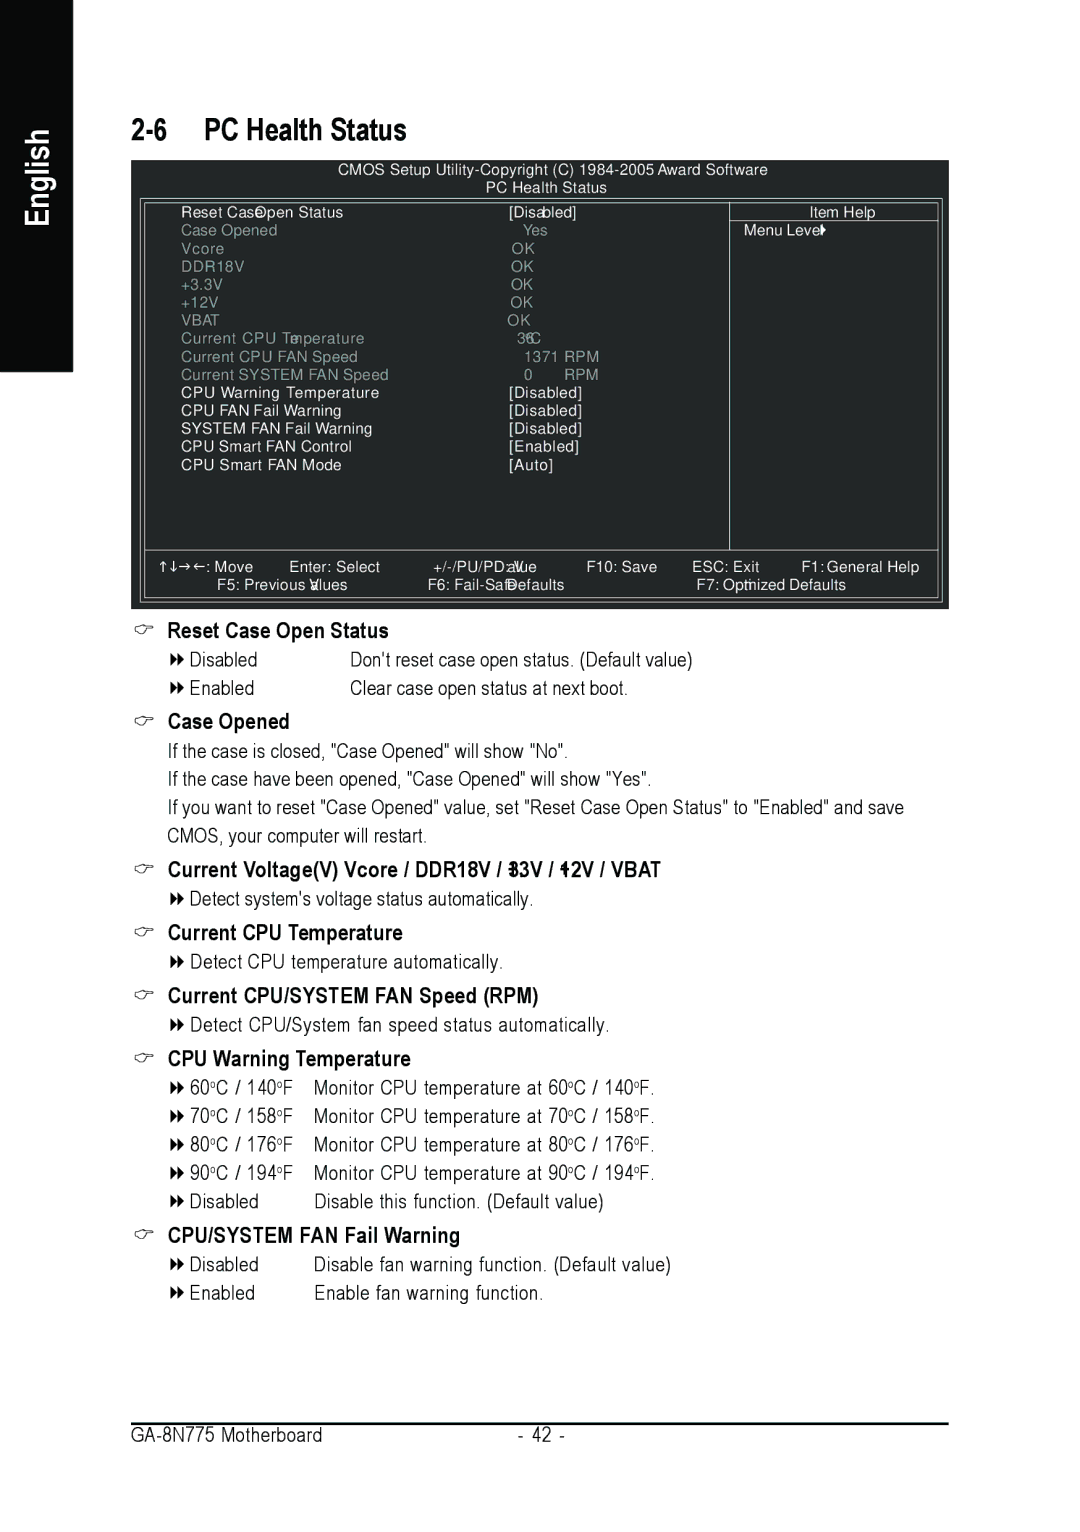 Intel GA-8N775 user manual PC Health Status 